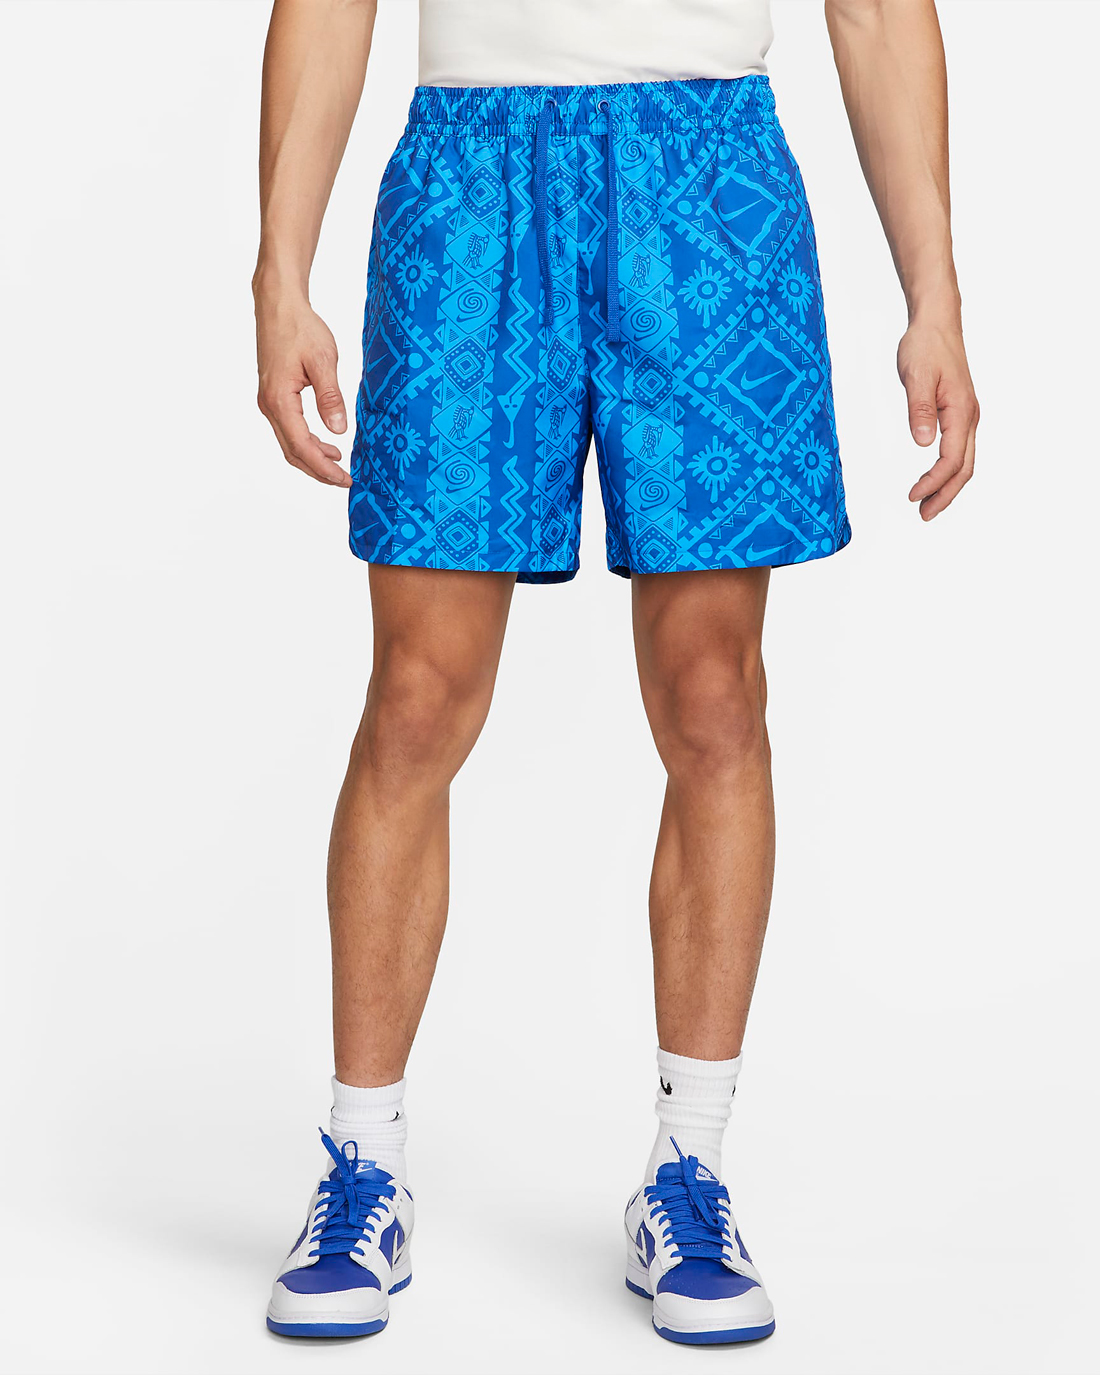 Nike-Sportswear-Woven-Flow-Shorts-Game-Royal